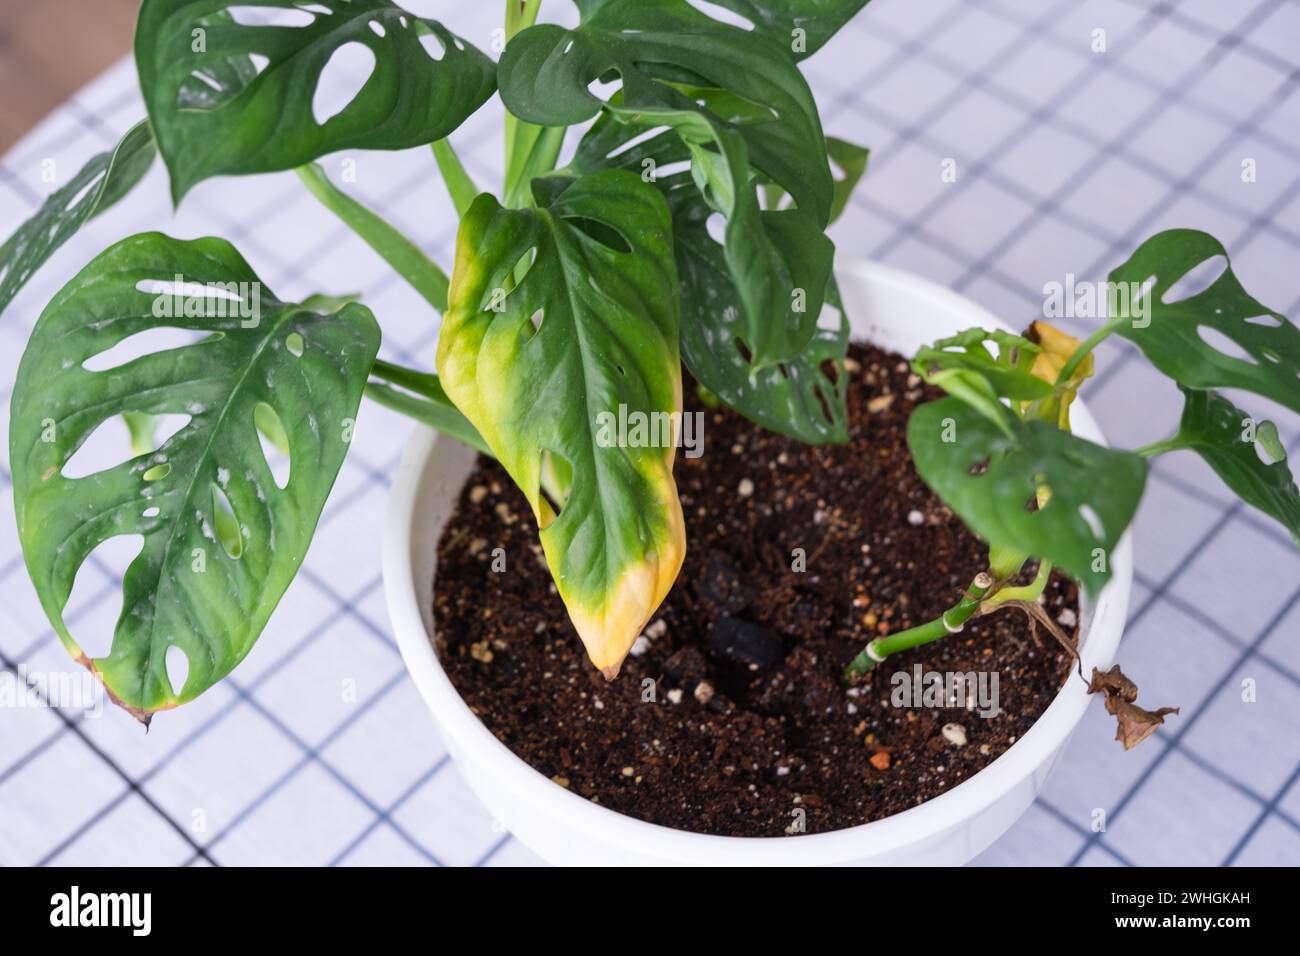 Problèmes dans la culture des plantes domestiques Monstera Monkey Mask - feuilles avec des pointes jaunes sèches, flétries, affectées par l'araignée Banque D'Images